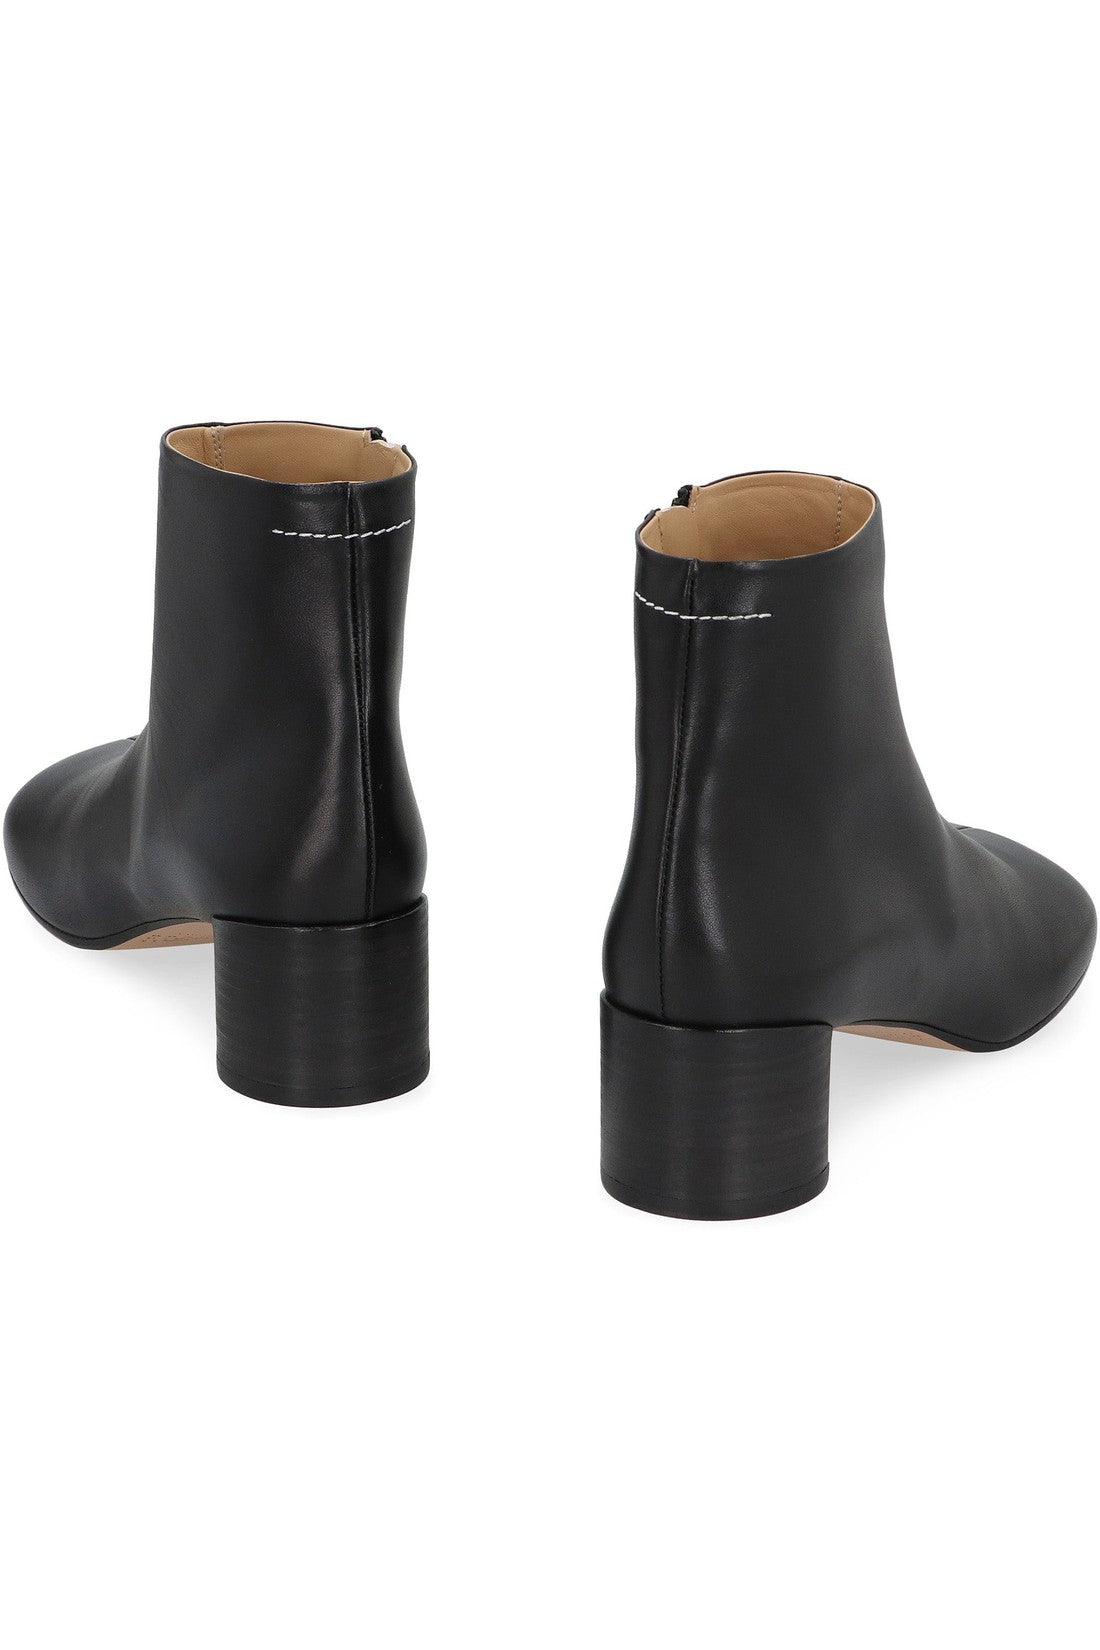 MM6 Maison Margiela-OUTLET-SALE-Anatomici Leather ankle boots-ARCHIVIST